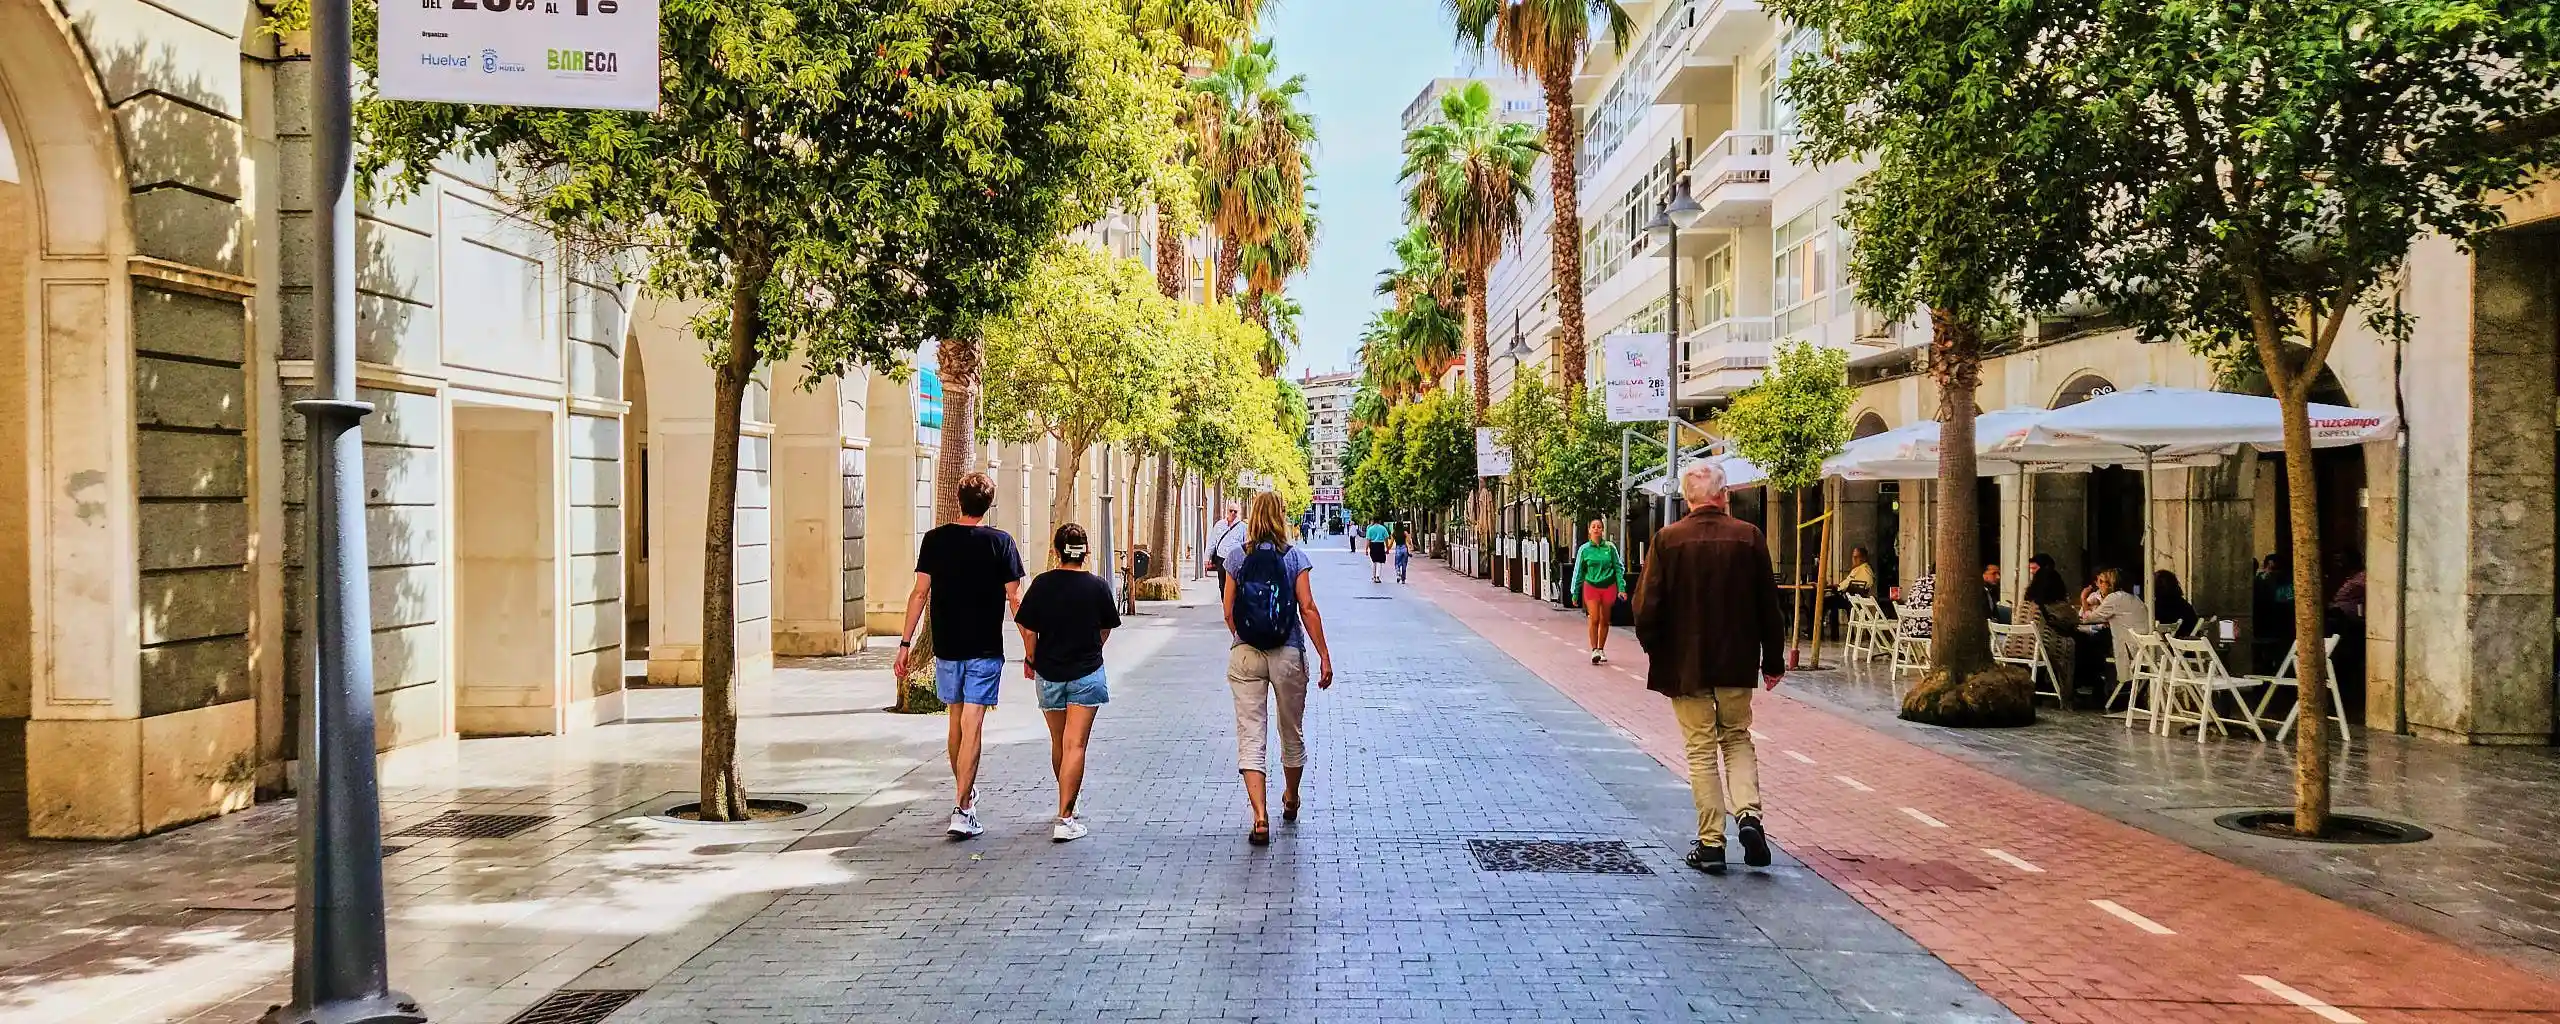 Huelva ciudad sostenible